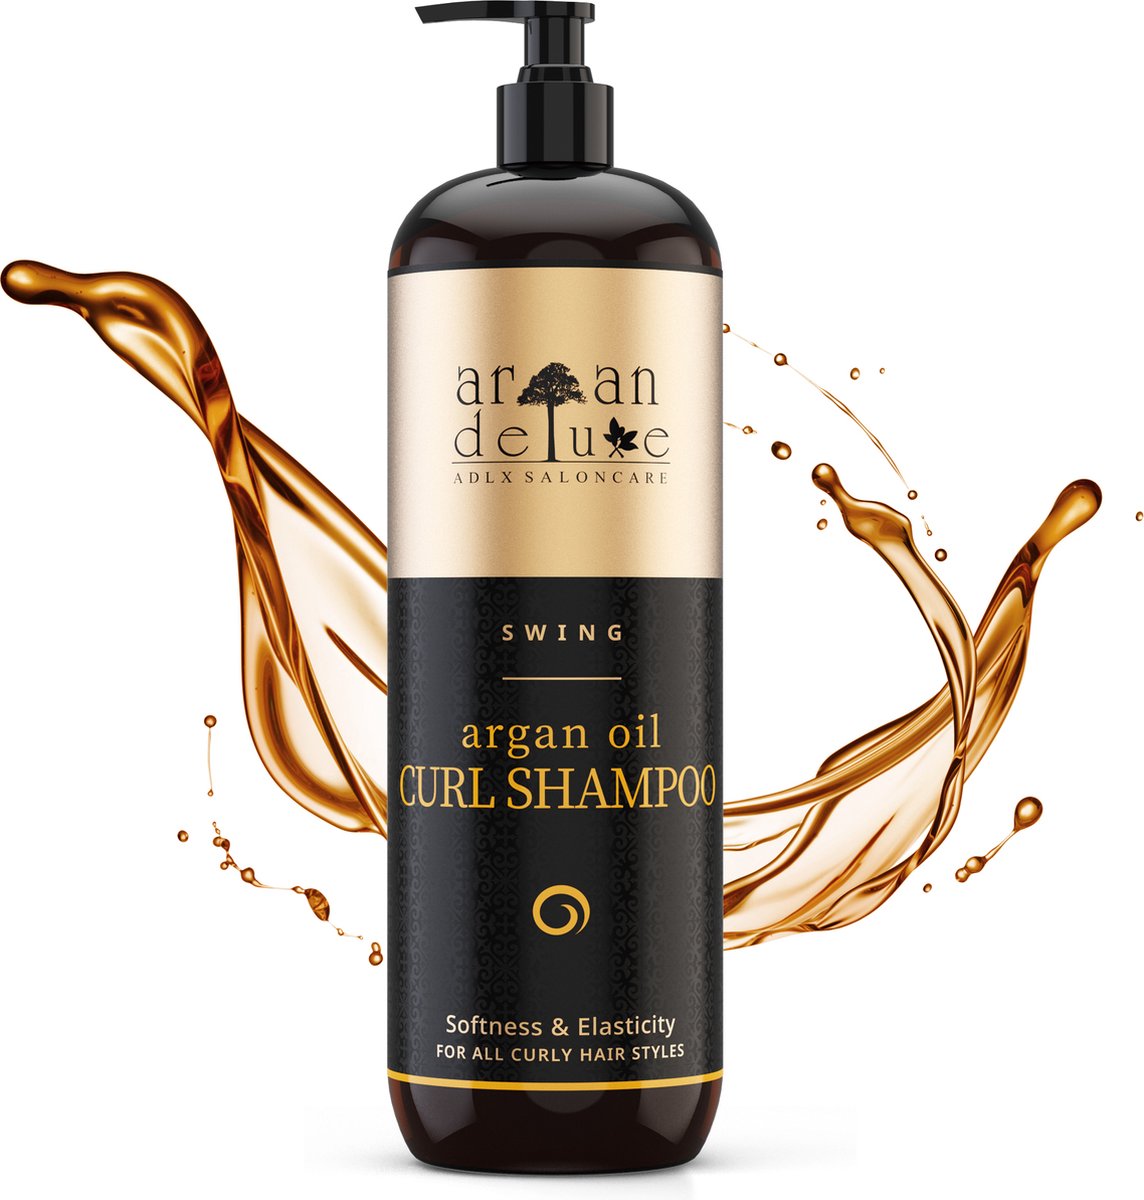 Argan Deluxe Curl Shampoo 1000 ml - Haarshampoo met arganolie voor gladde en glanzende krullen - Arganolie shampoo voor vrouwen en mannen - Ideale haarverzorging voor je droomkrullen